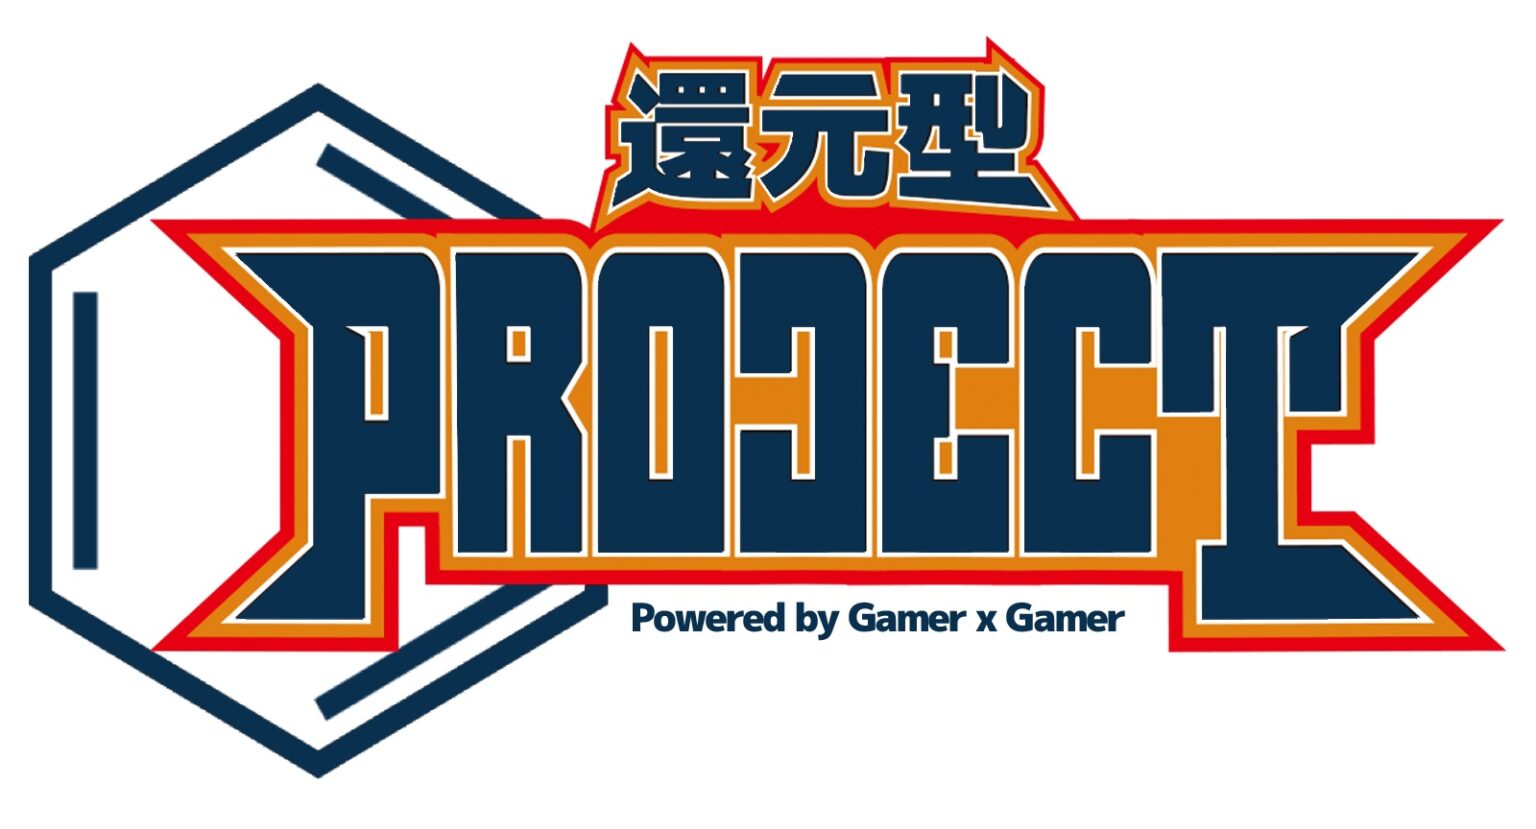 โครงการทีมอีสปอร์ต "โครงการลดประเภท" เริ่มแล้ว Strike 5 ผู้เล่น Itsuki, Yossan, NISHIKIN, Moto และกันยายนเป็นของ